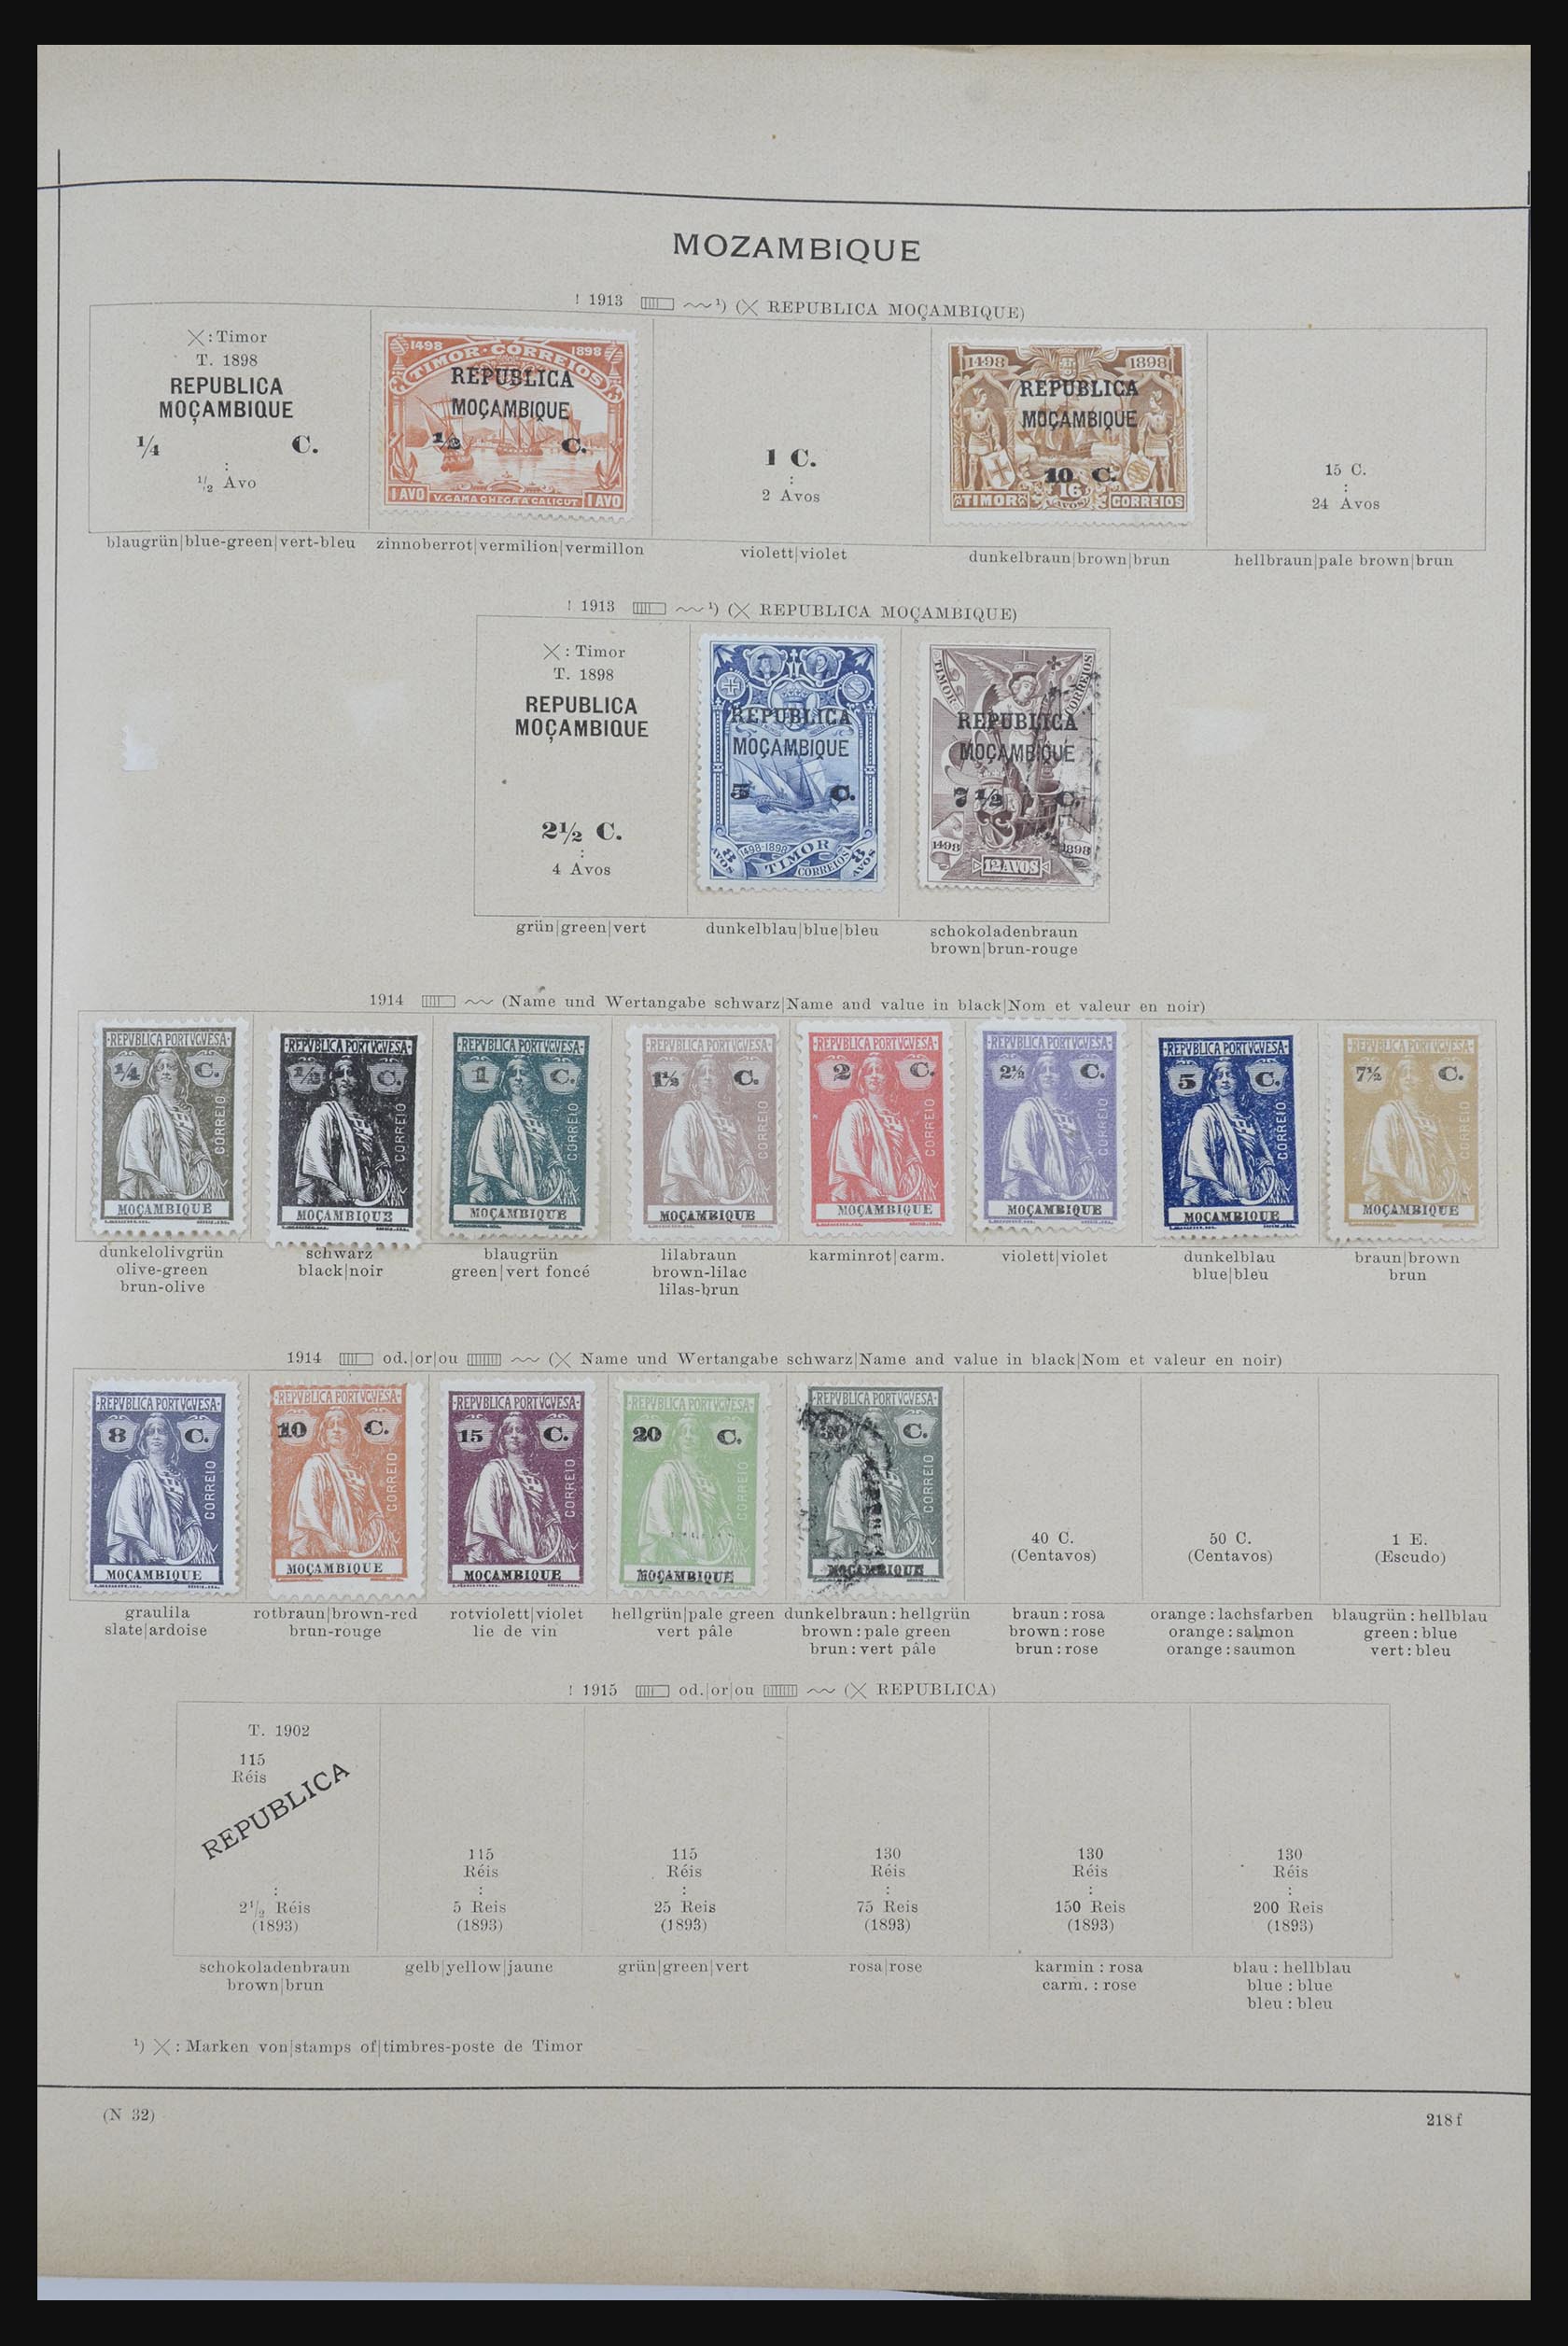 32070 100 - 32070 Portugal en koloniën 1857-1953.